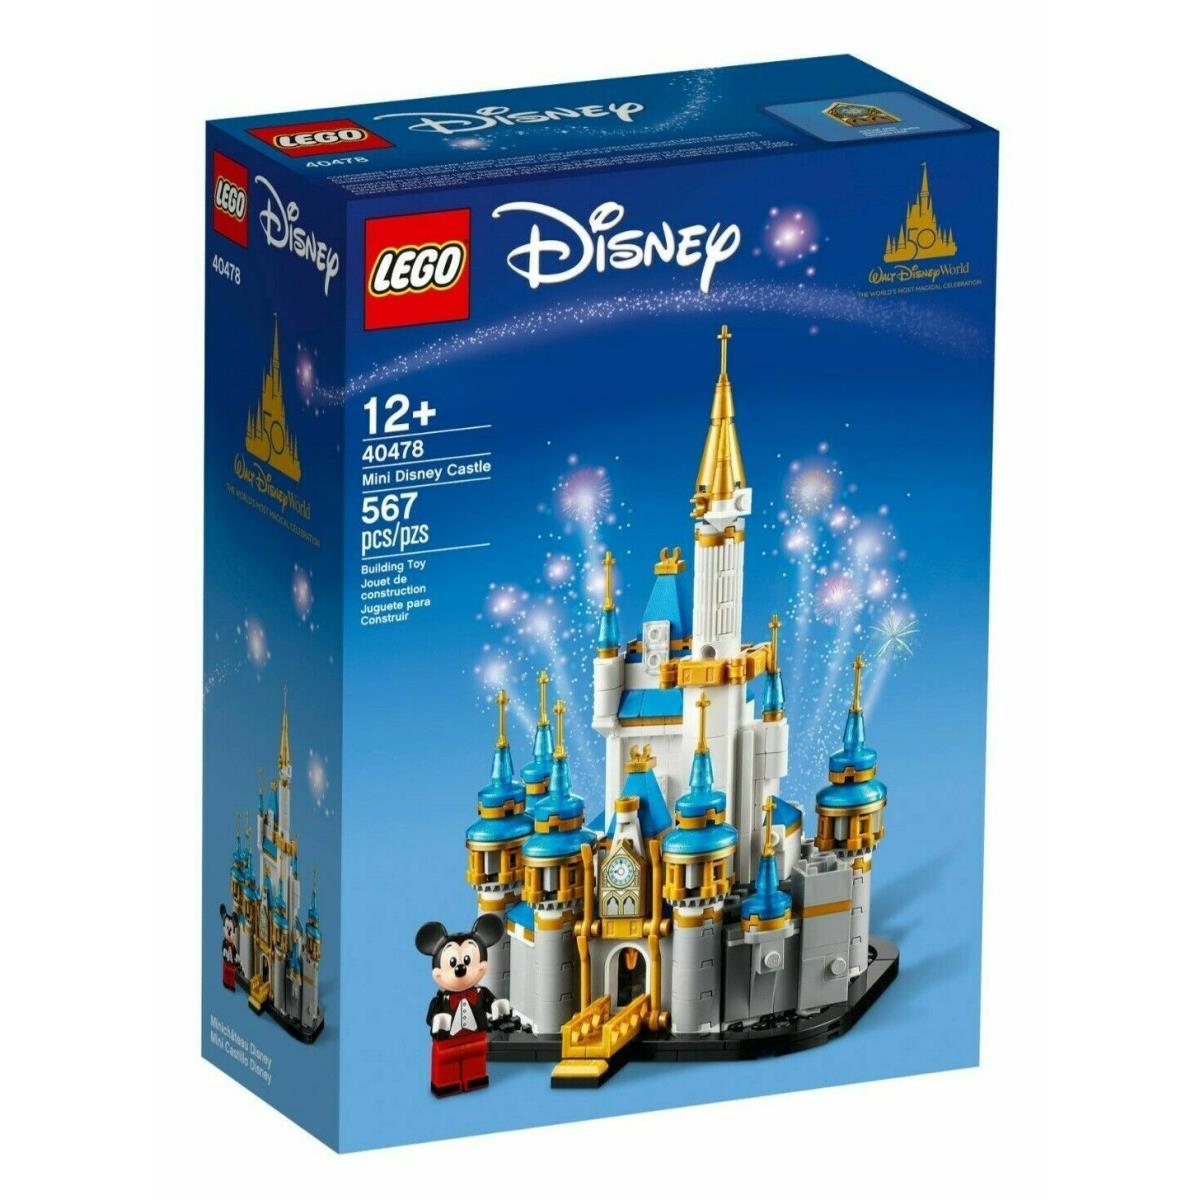 Lego 40478 Mini Disney Castle 50th Anniversary Perfect Box Guarantee